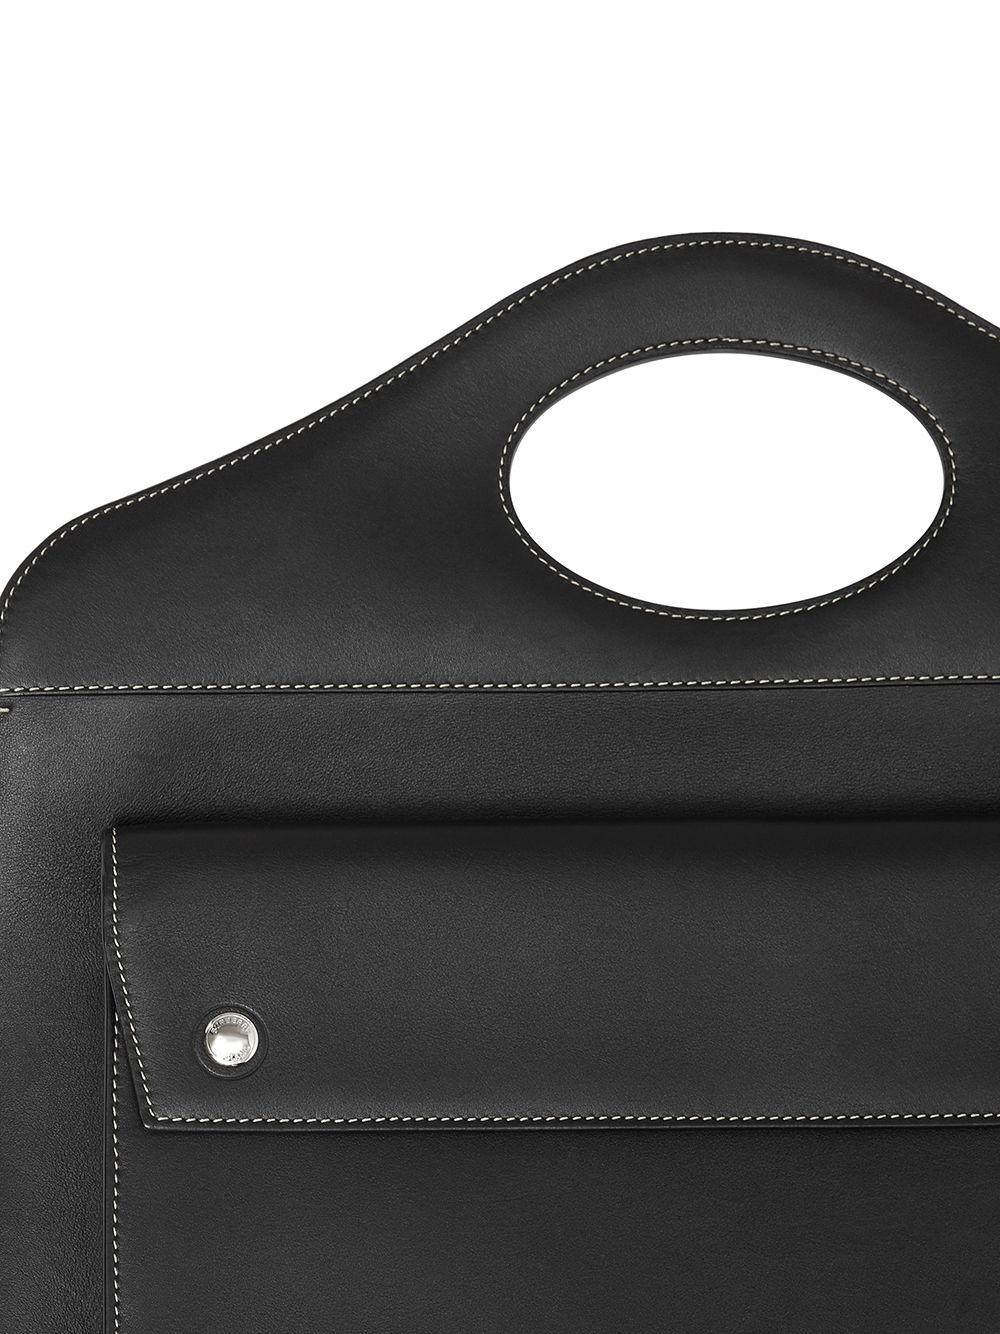 Burberry Medium Leather Pocket Bag - Farfetch